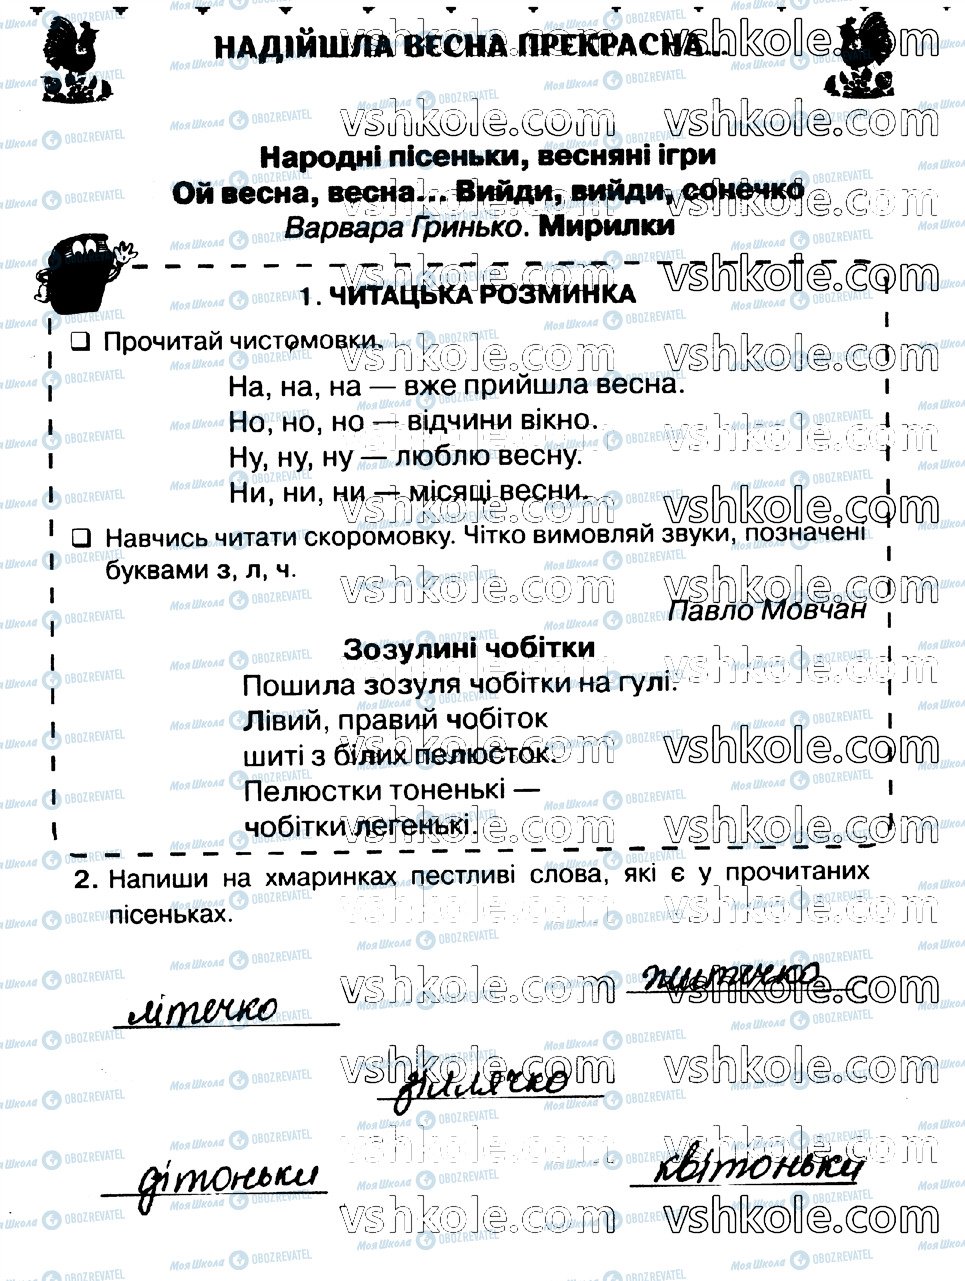 ГДЗ Українська мова 2 клас сторінка стр67